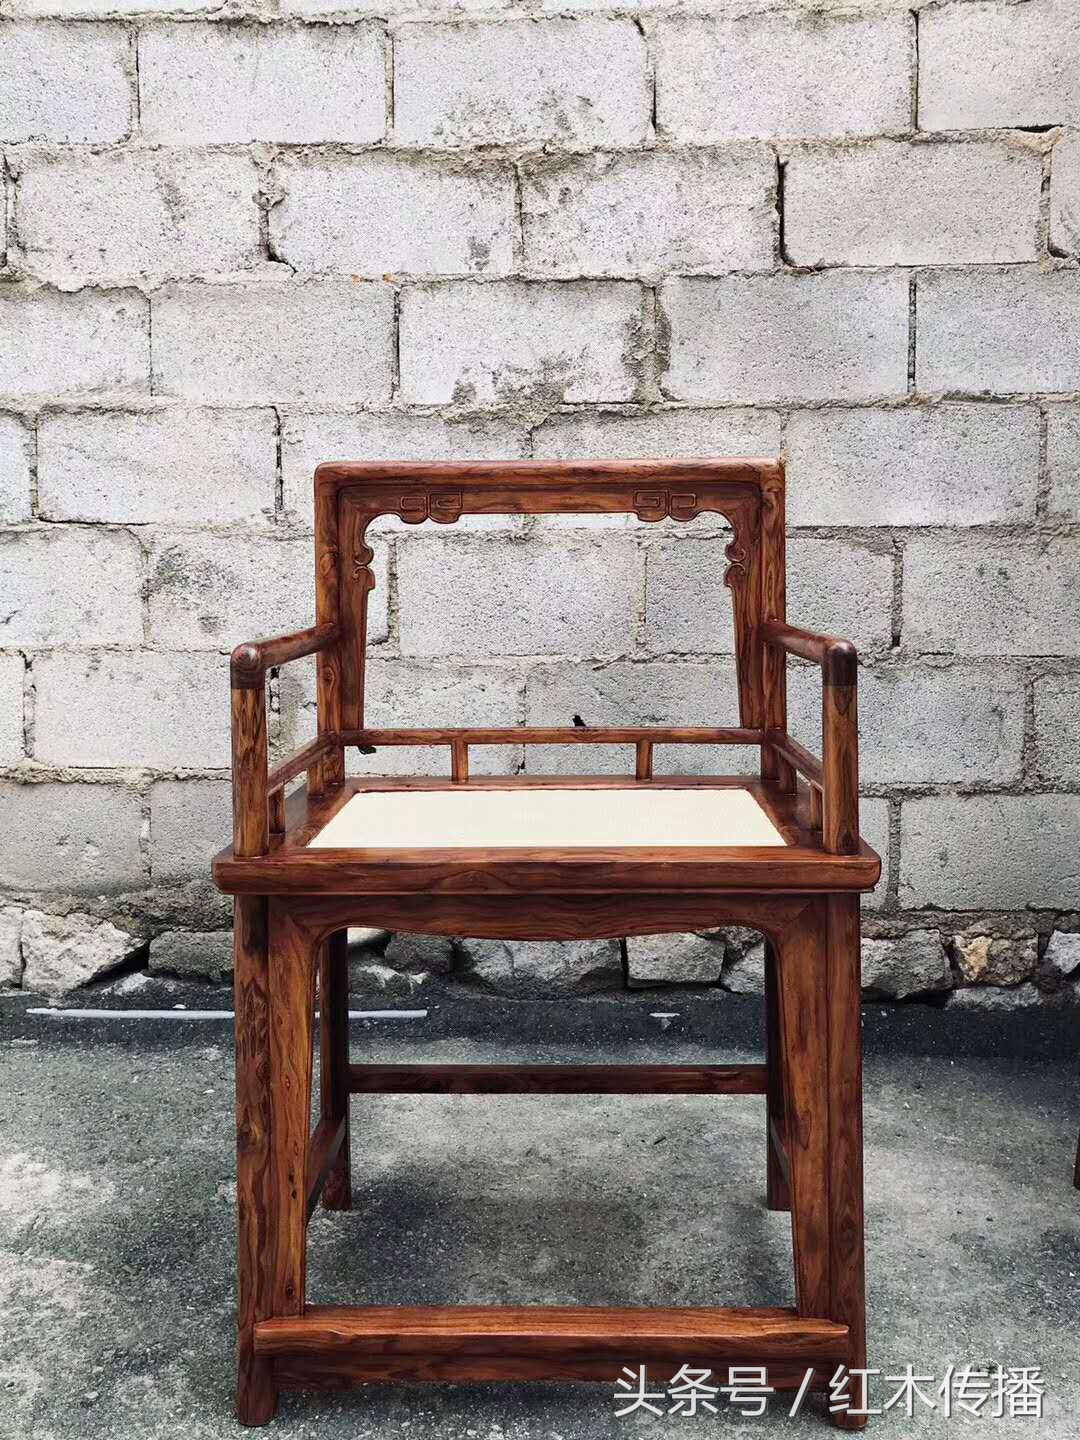 中国人为什么这么喜欢红木家具呢